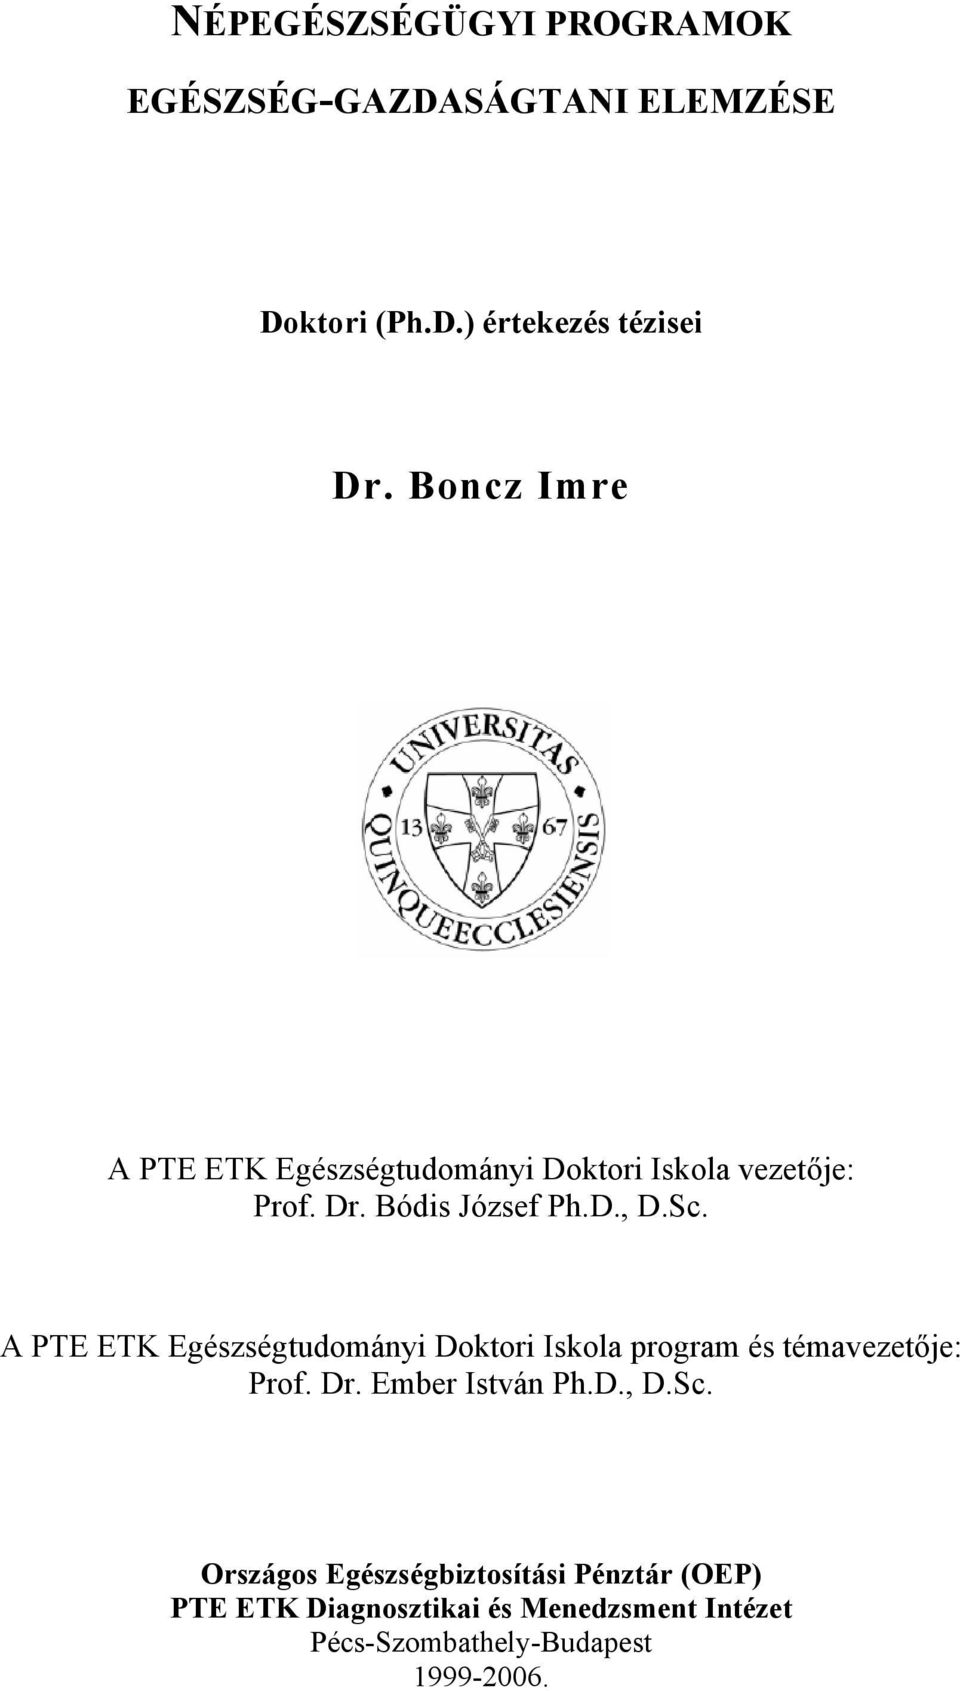 A PTE ETK Egészségtudományi Doktori Iskola program és témavezetője: Prof. Dr. Ember István Ph.D., D.Sc.